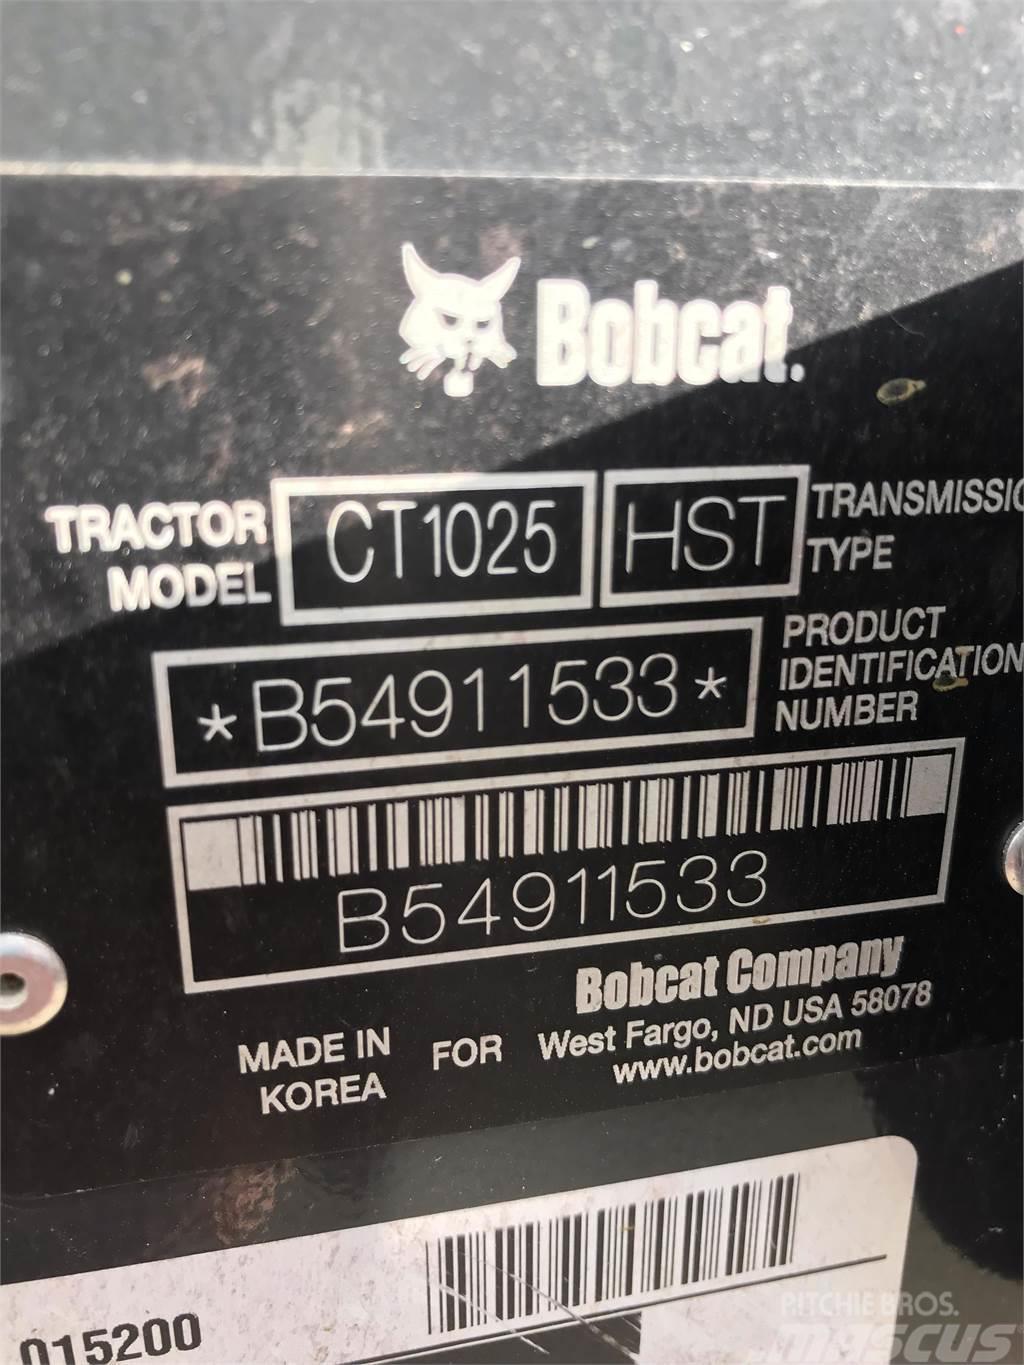 Bobcat CT1025 Kompakttraktorid